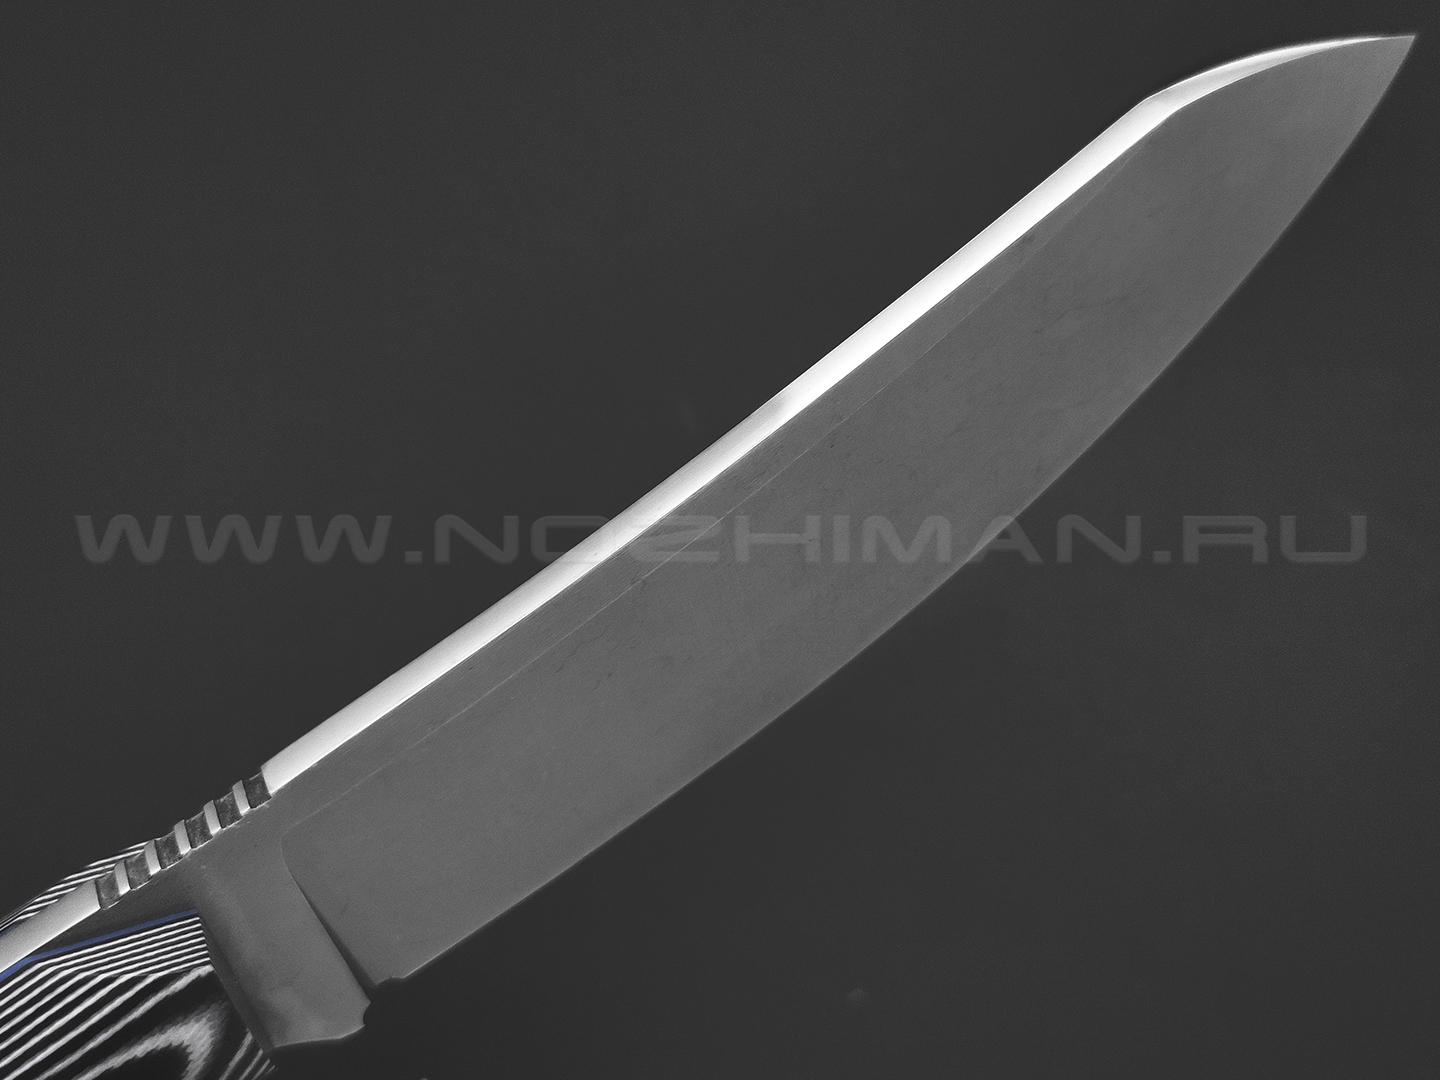 7 ножей нож Сунгай сталь K110 stonewash, рукоять G10 black & white